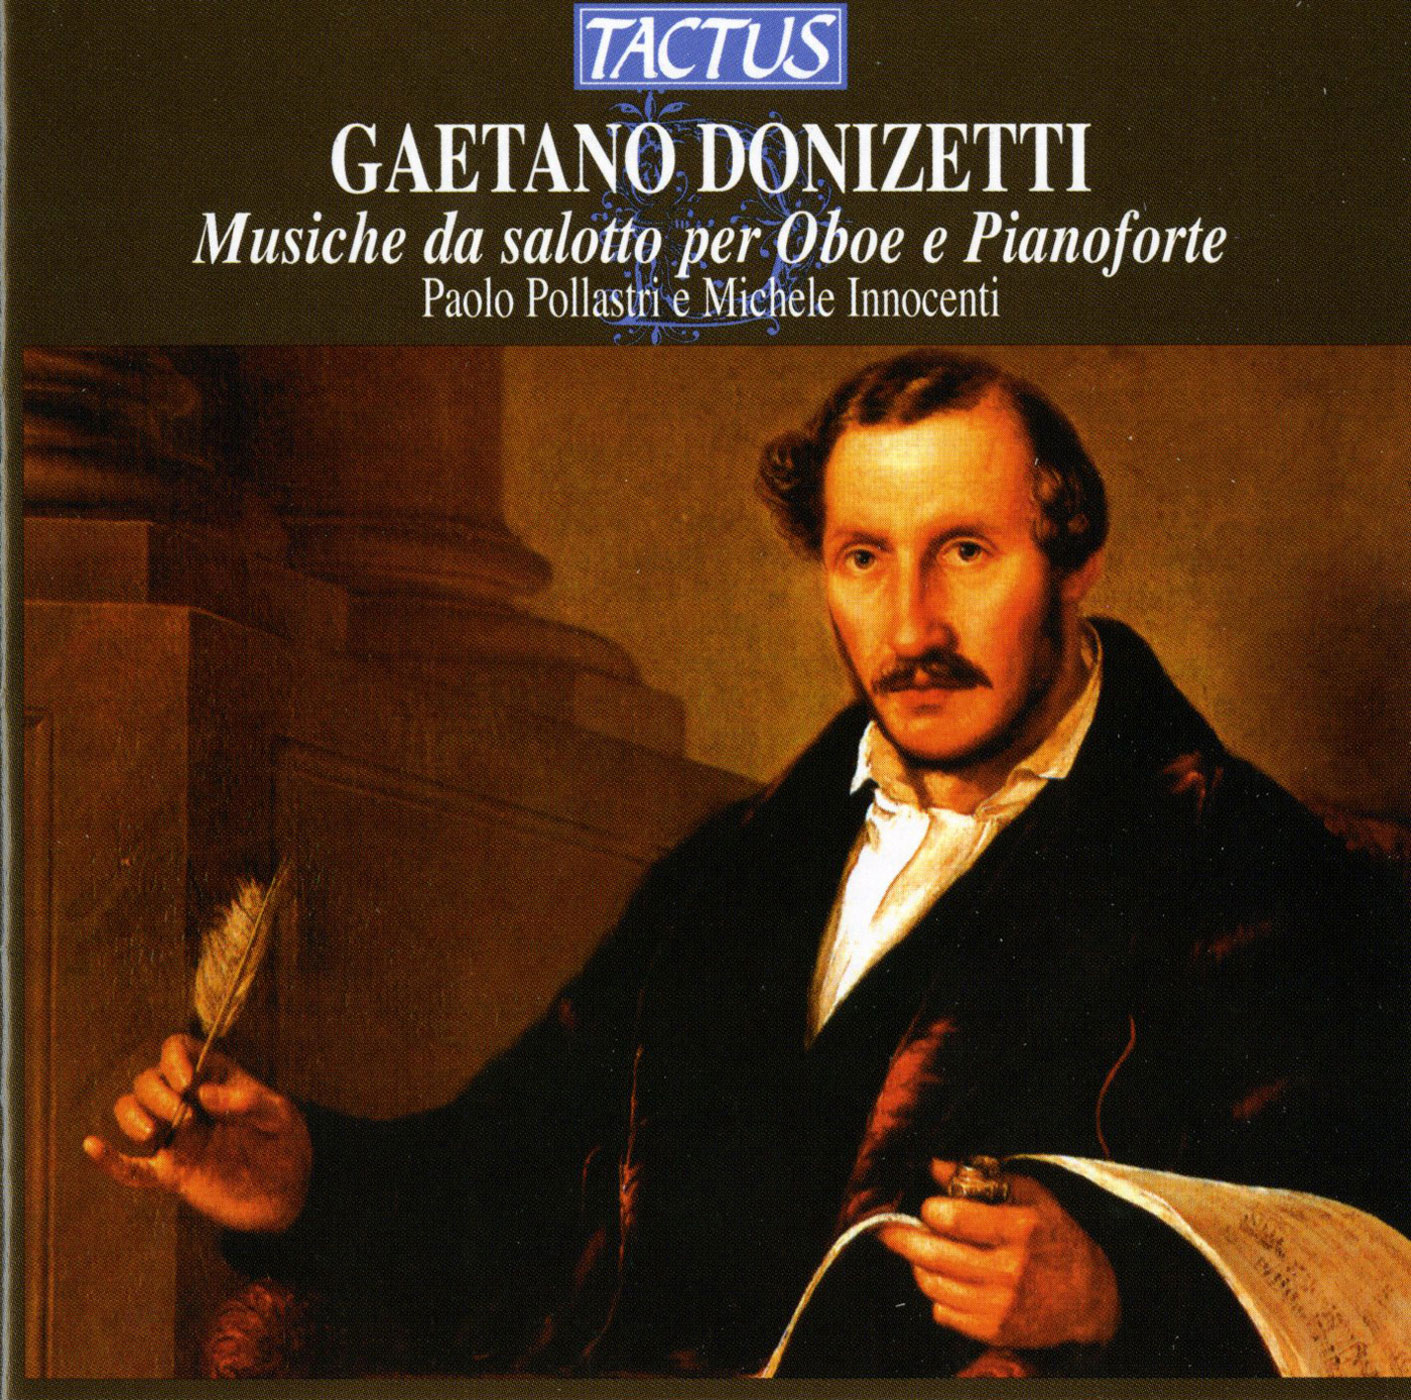 Гаэтано доницетти. Доницетти композитор. Доницетти портрет. Гаэтано Доницетти итальянский композитор. Беллини и Доницетти.